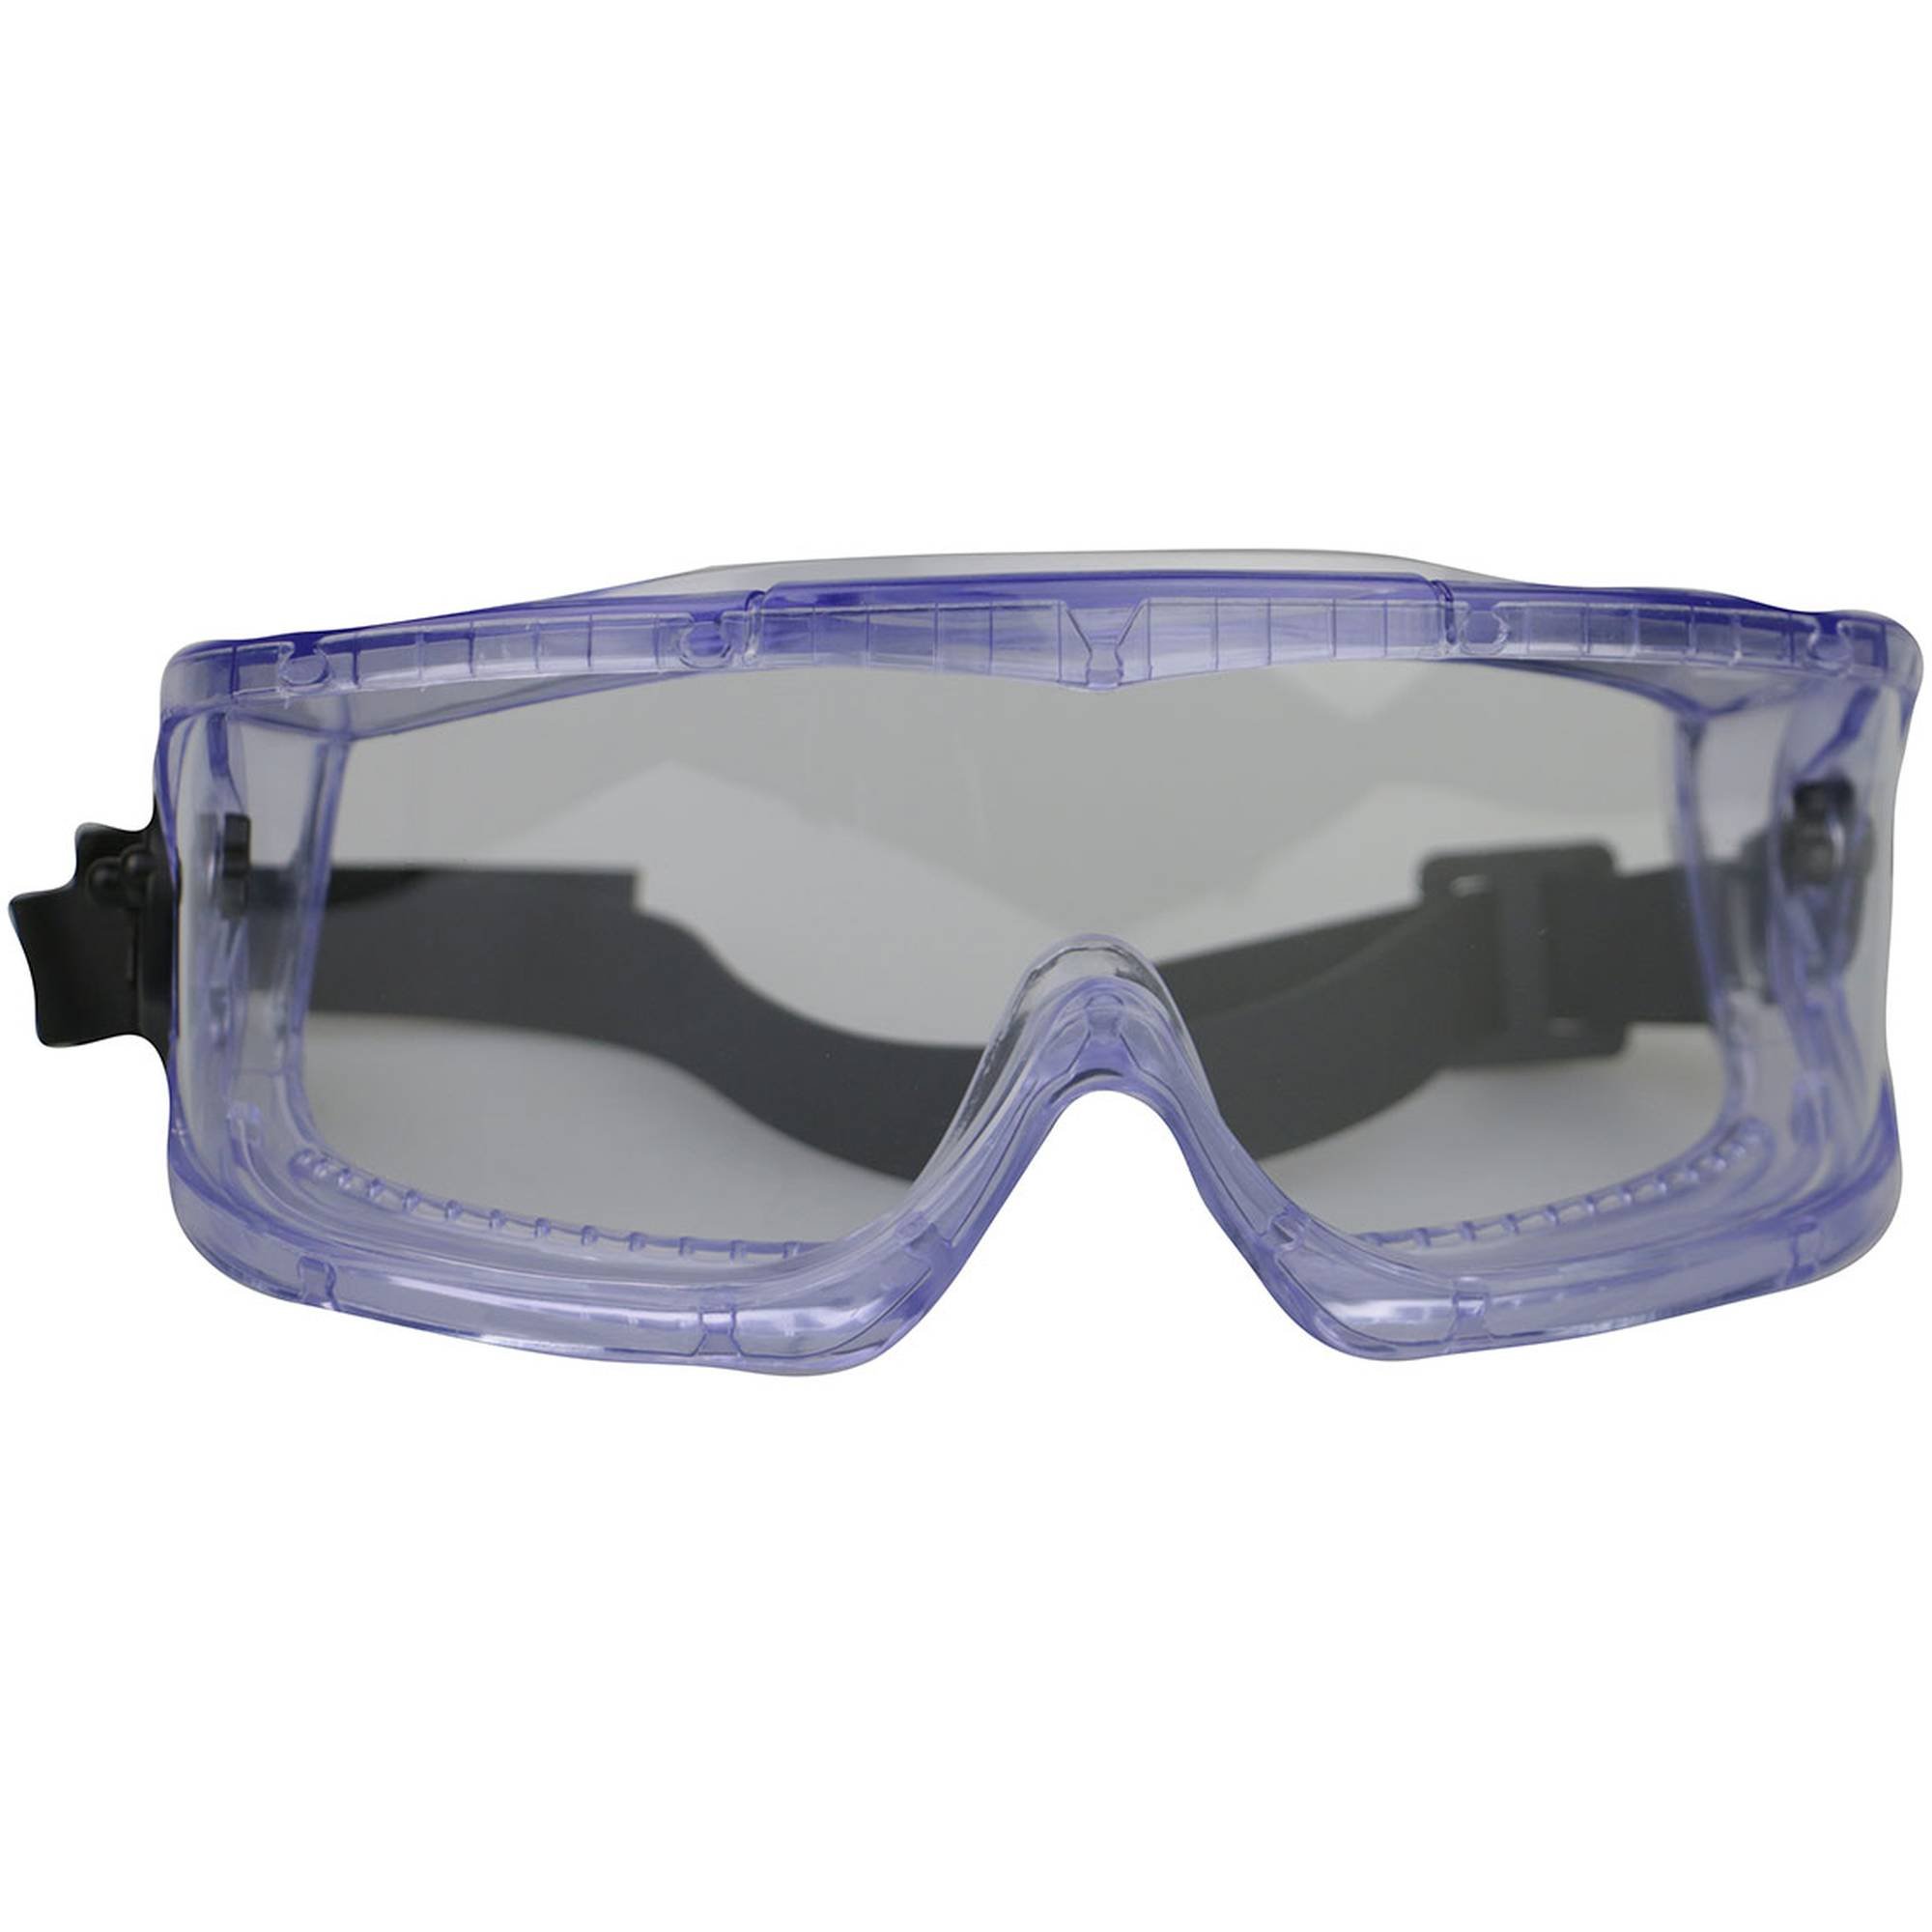 Chemie-Sicherheitsmess-Set- Messbecher, Schutzbrille, Schutzhandschuh, Web Shop